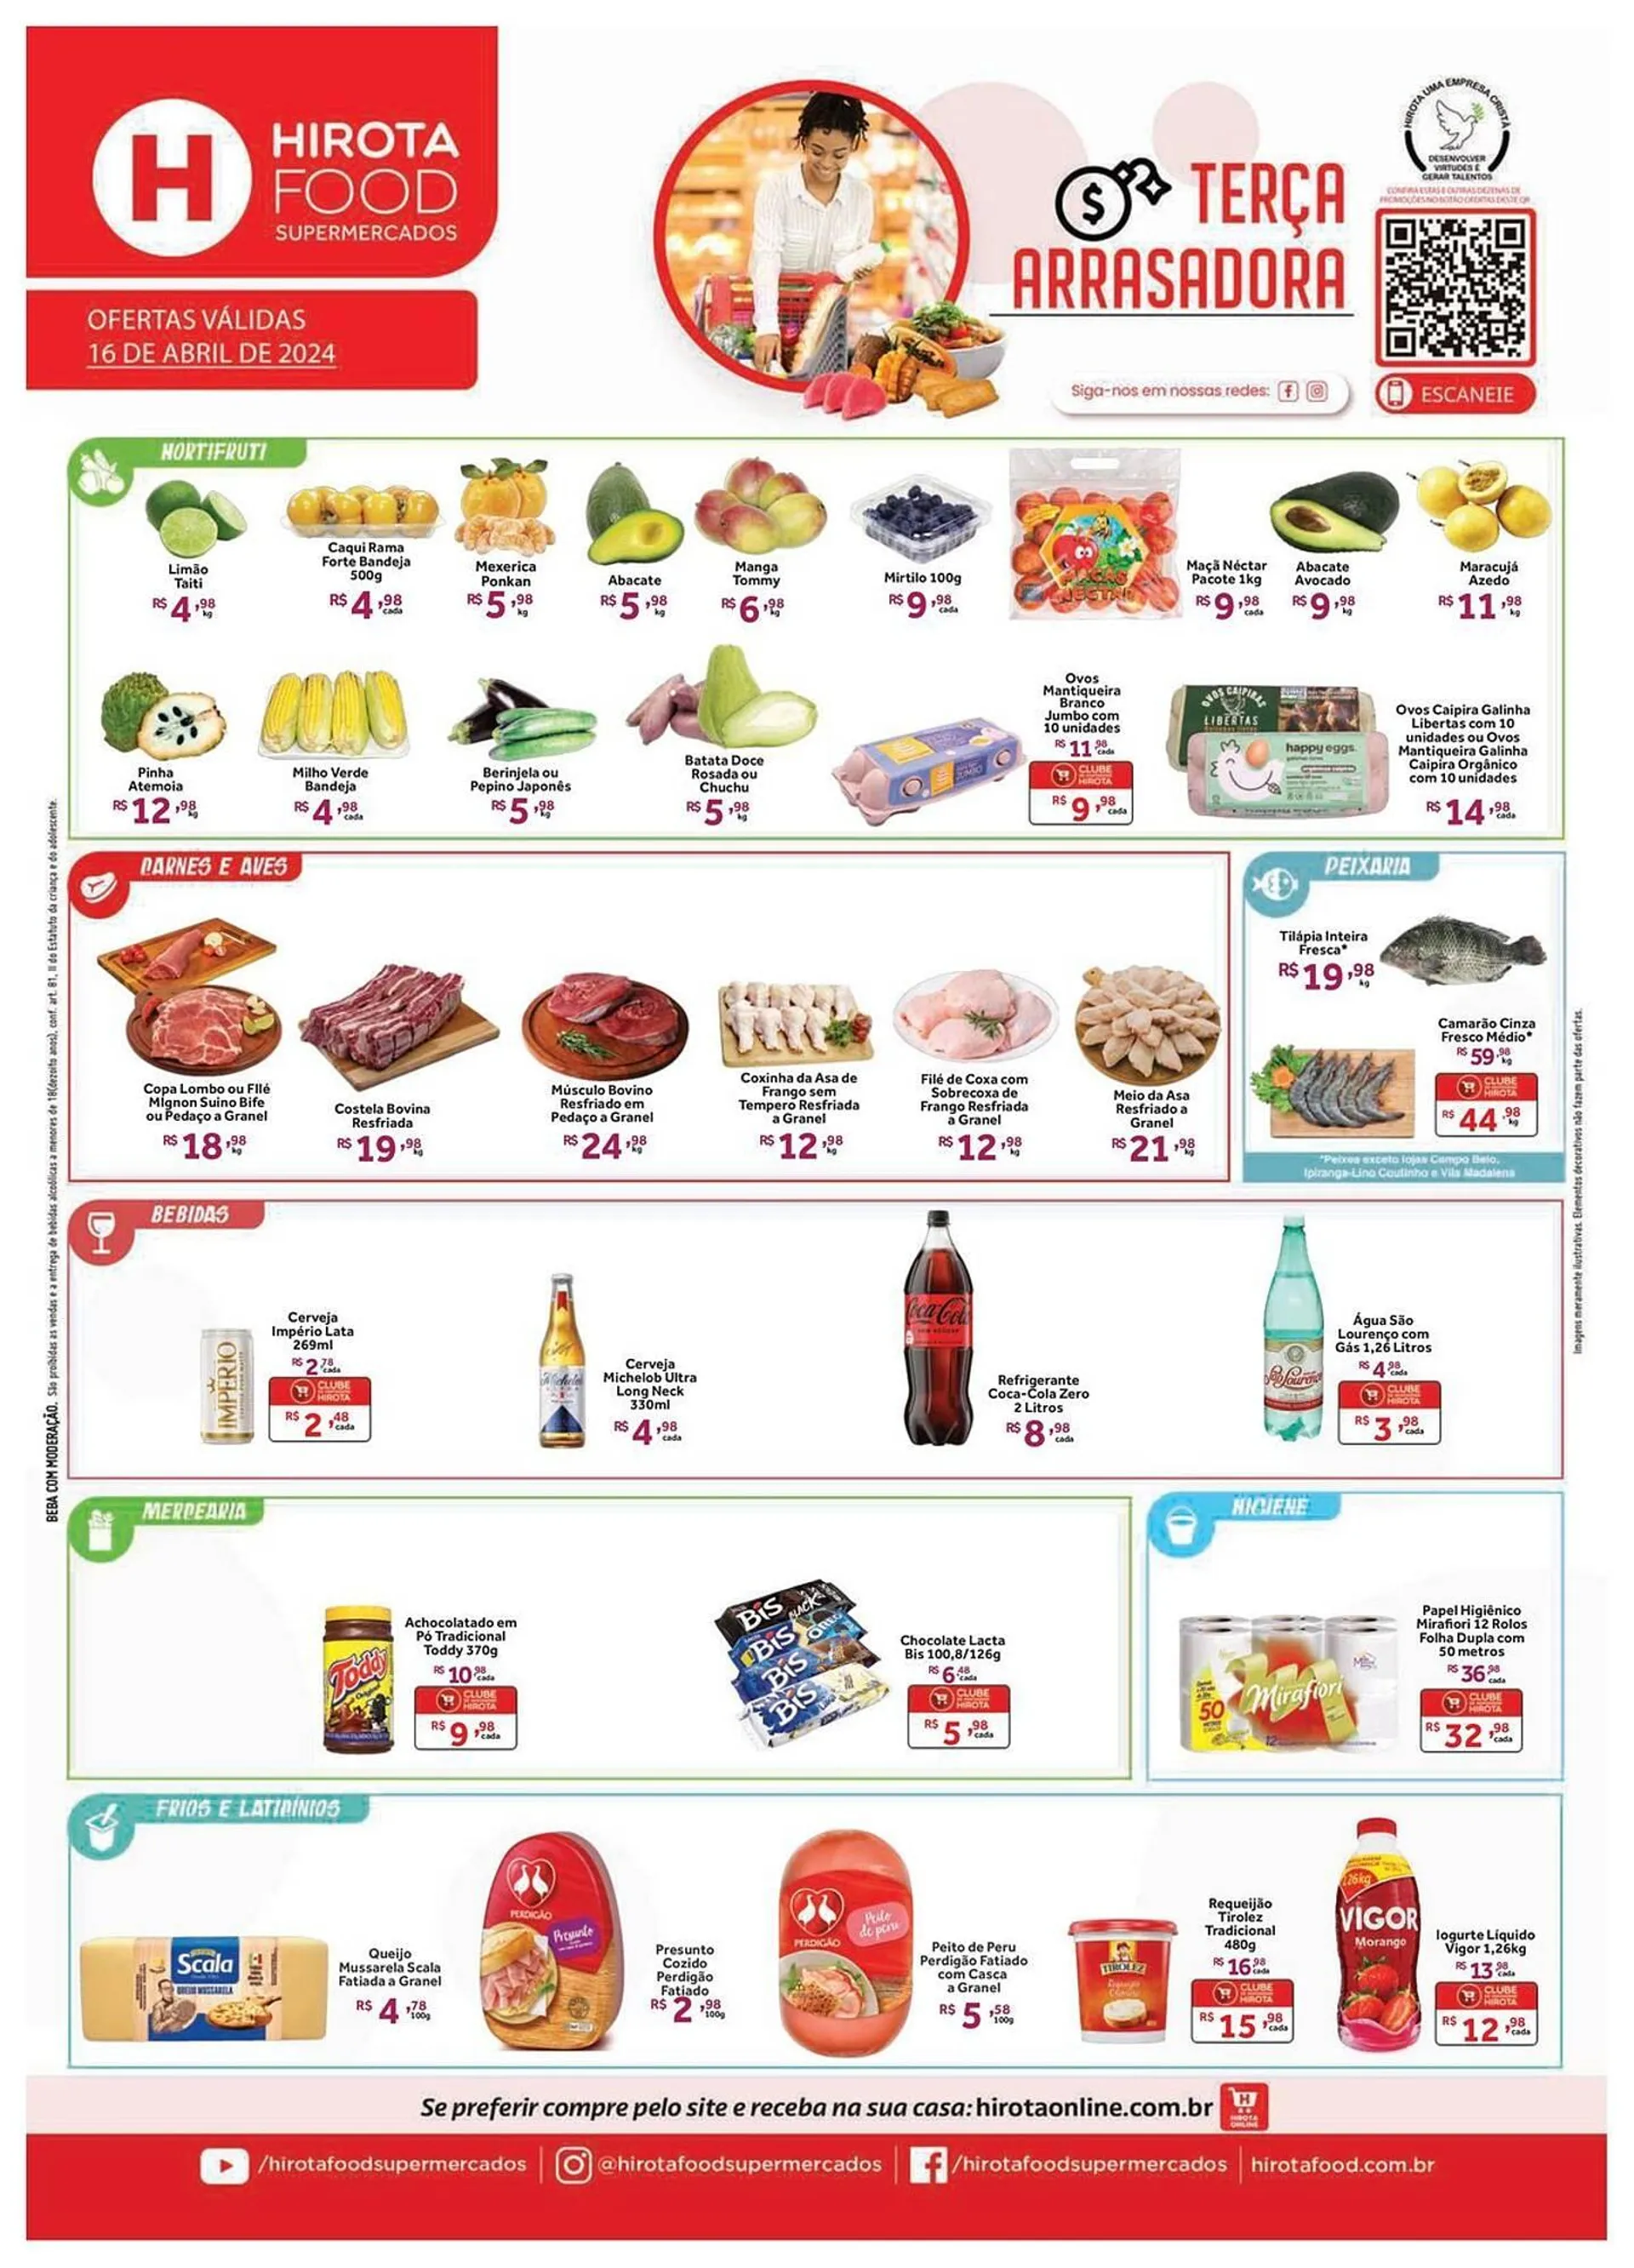 Catálogo Hirota Food Supermercado - 1